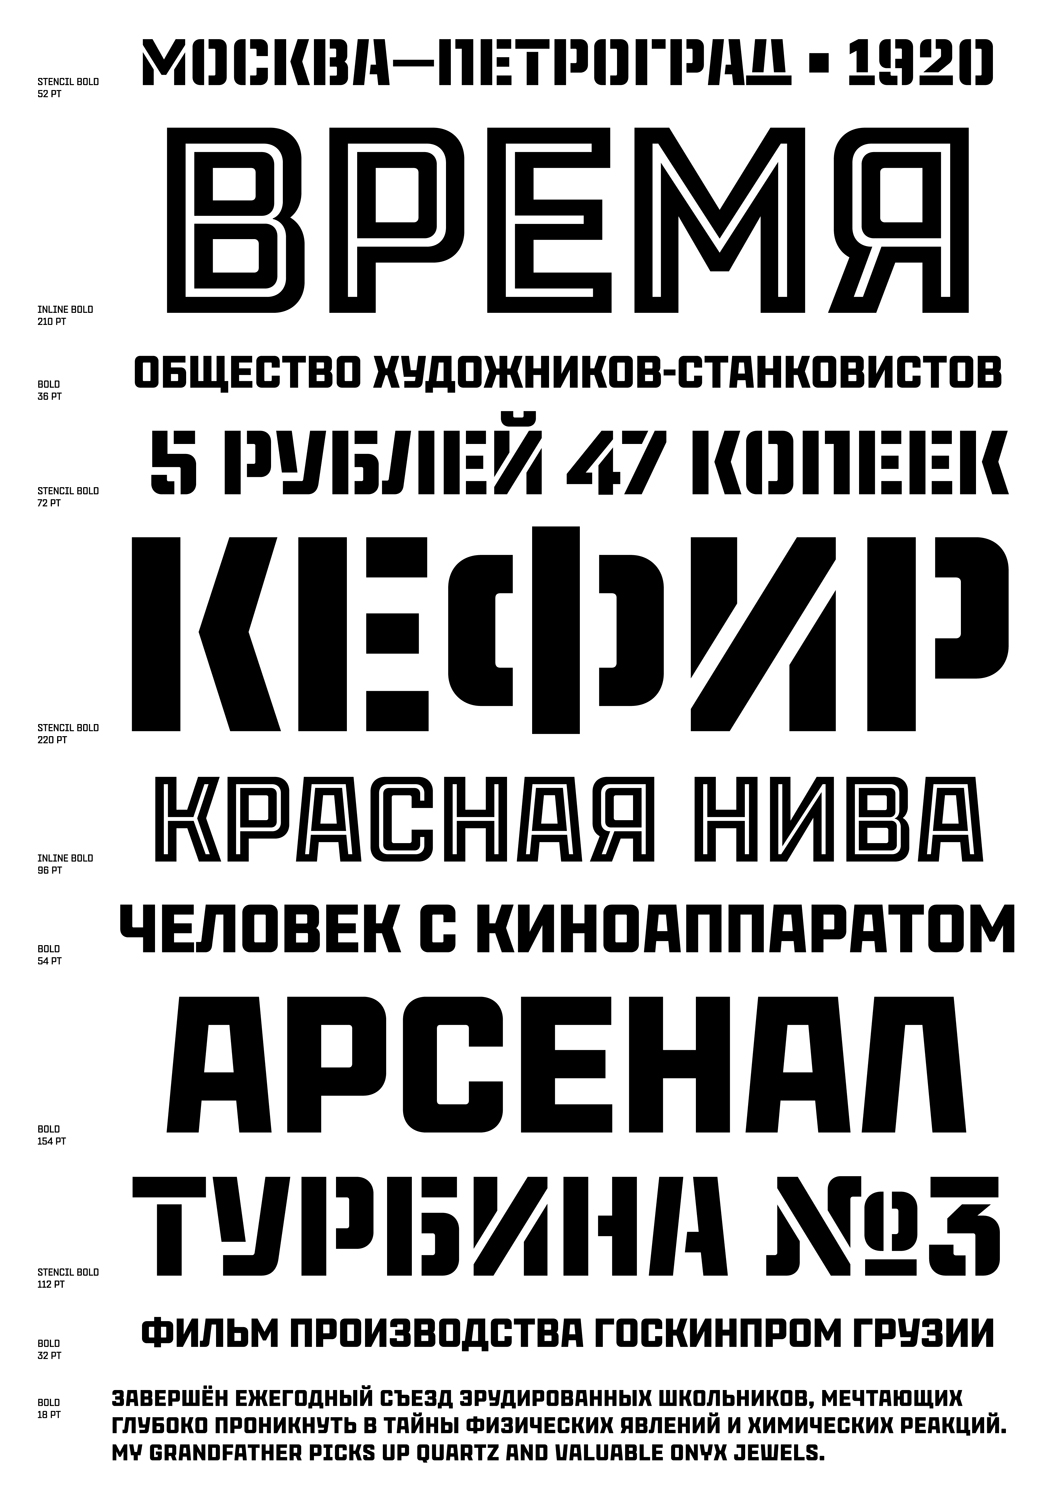 Журнальный шрифт. Плакатный шрифт. Рекламные шрифты. Советский шрифт. Русские кириллические шрифты.